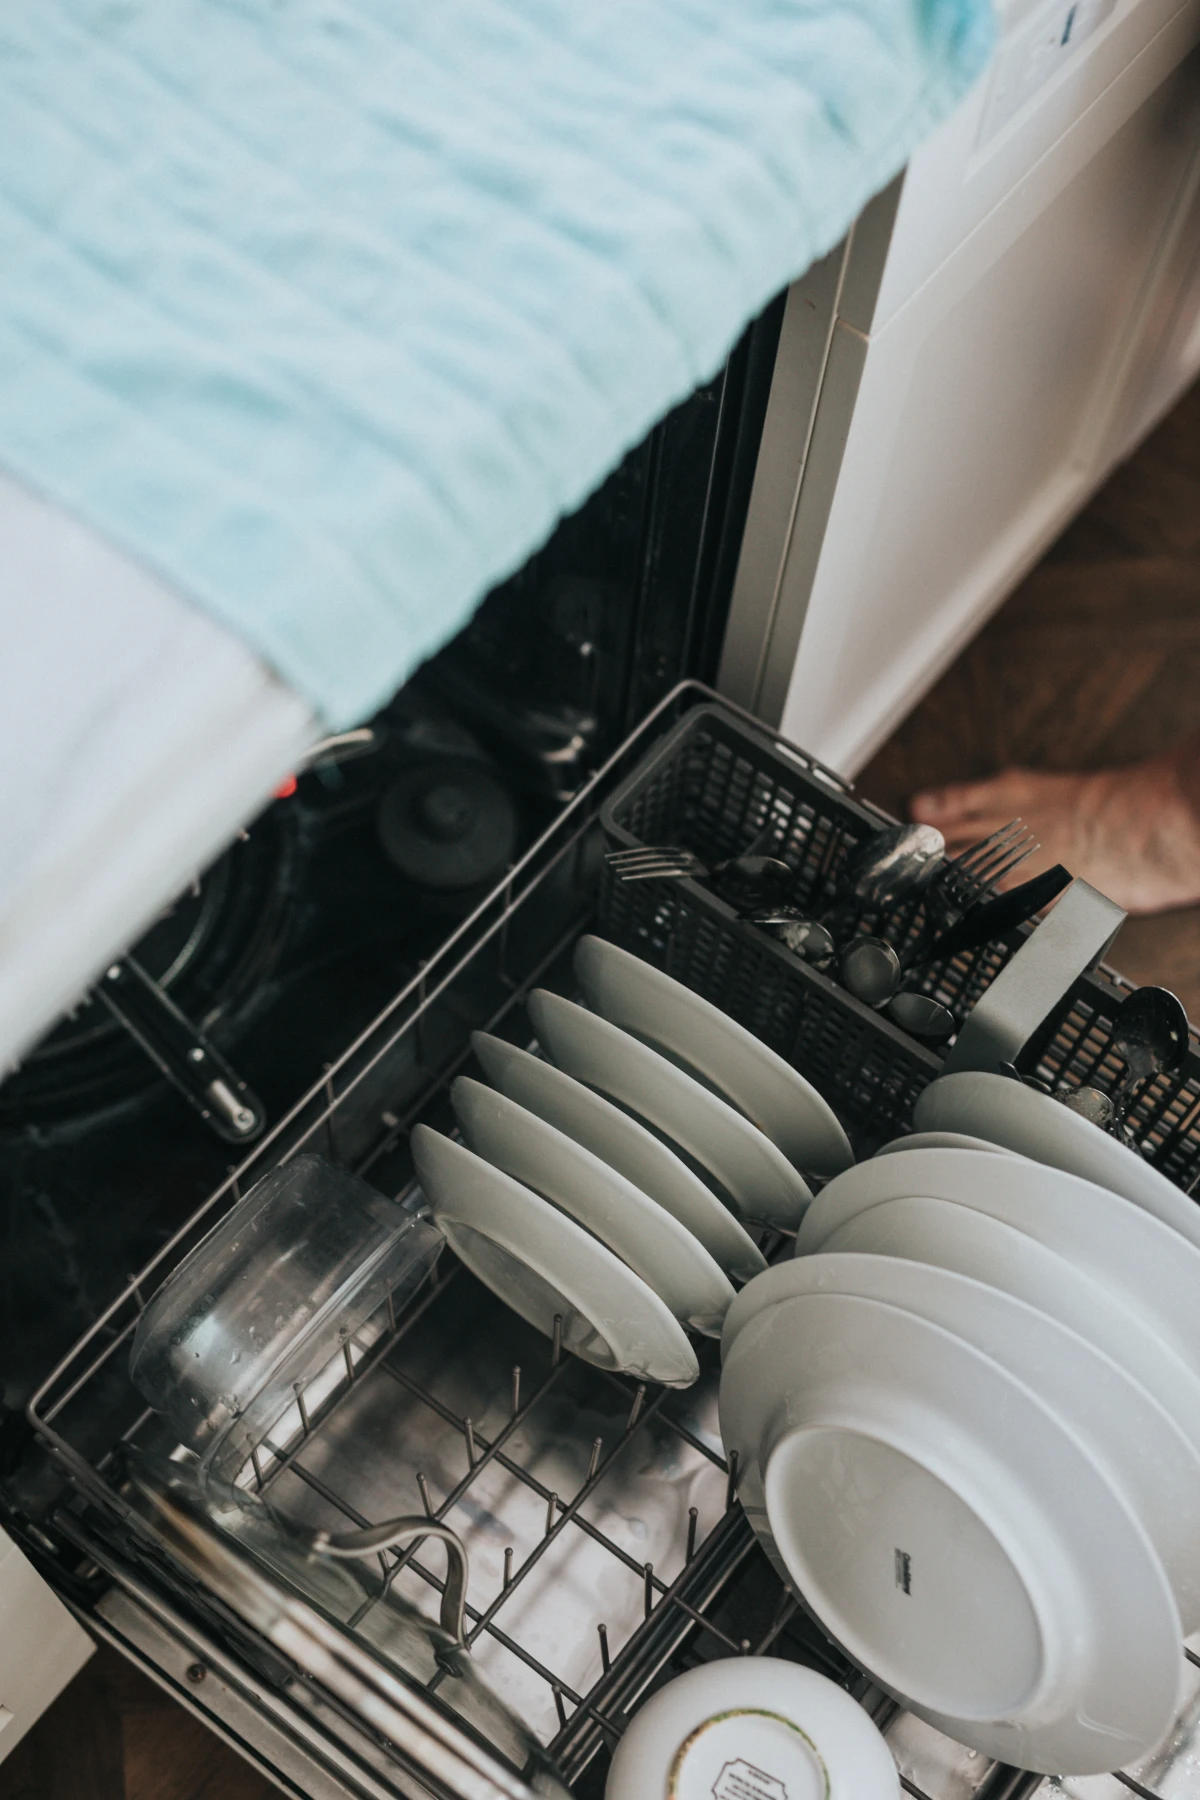 energy saving myths full dishwashers